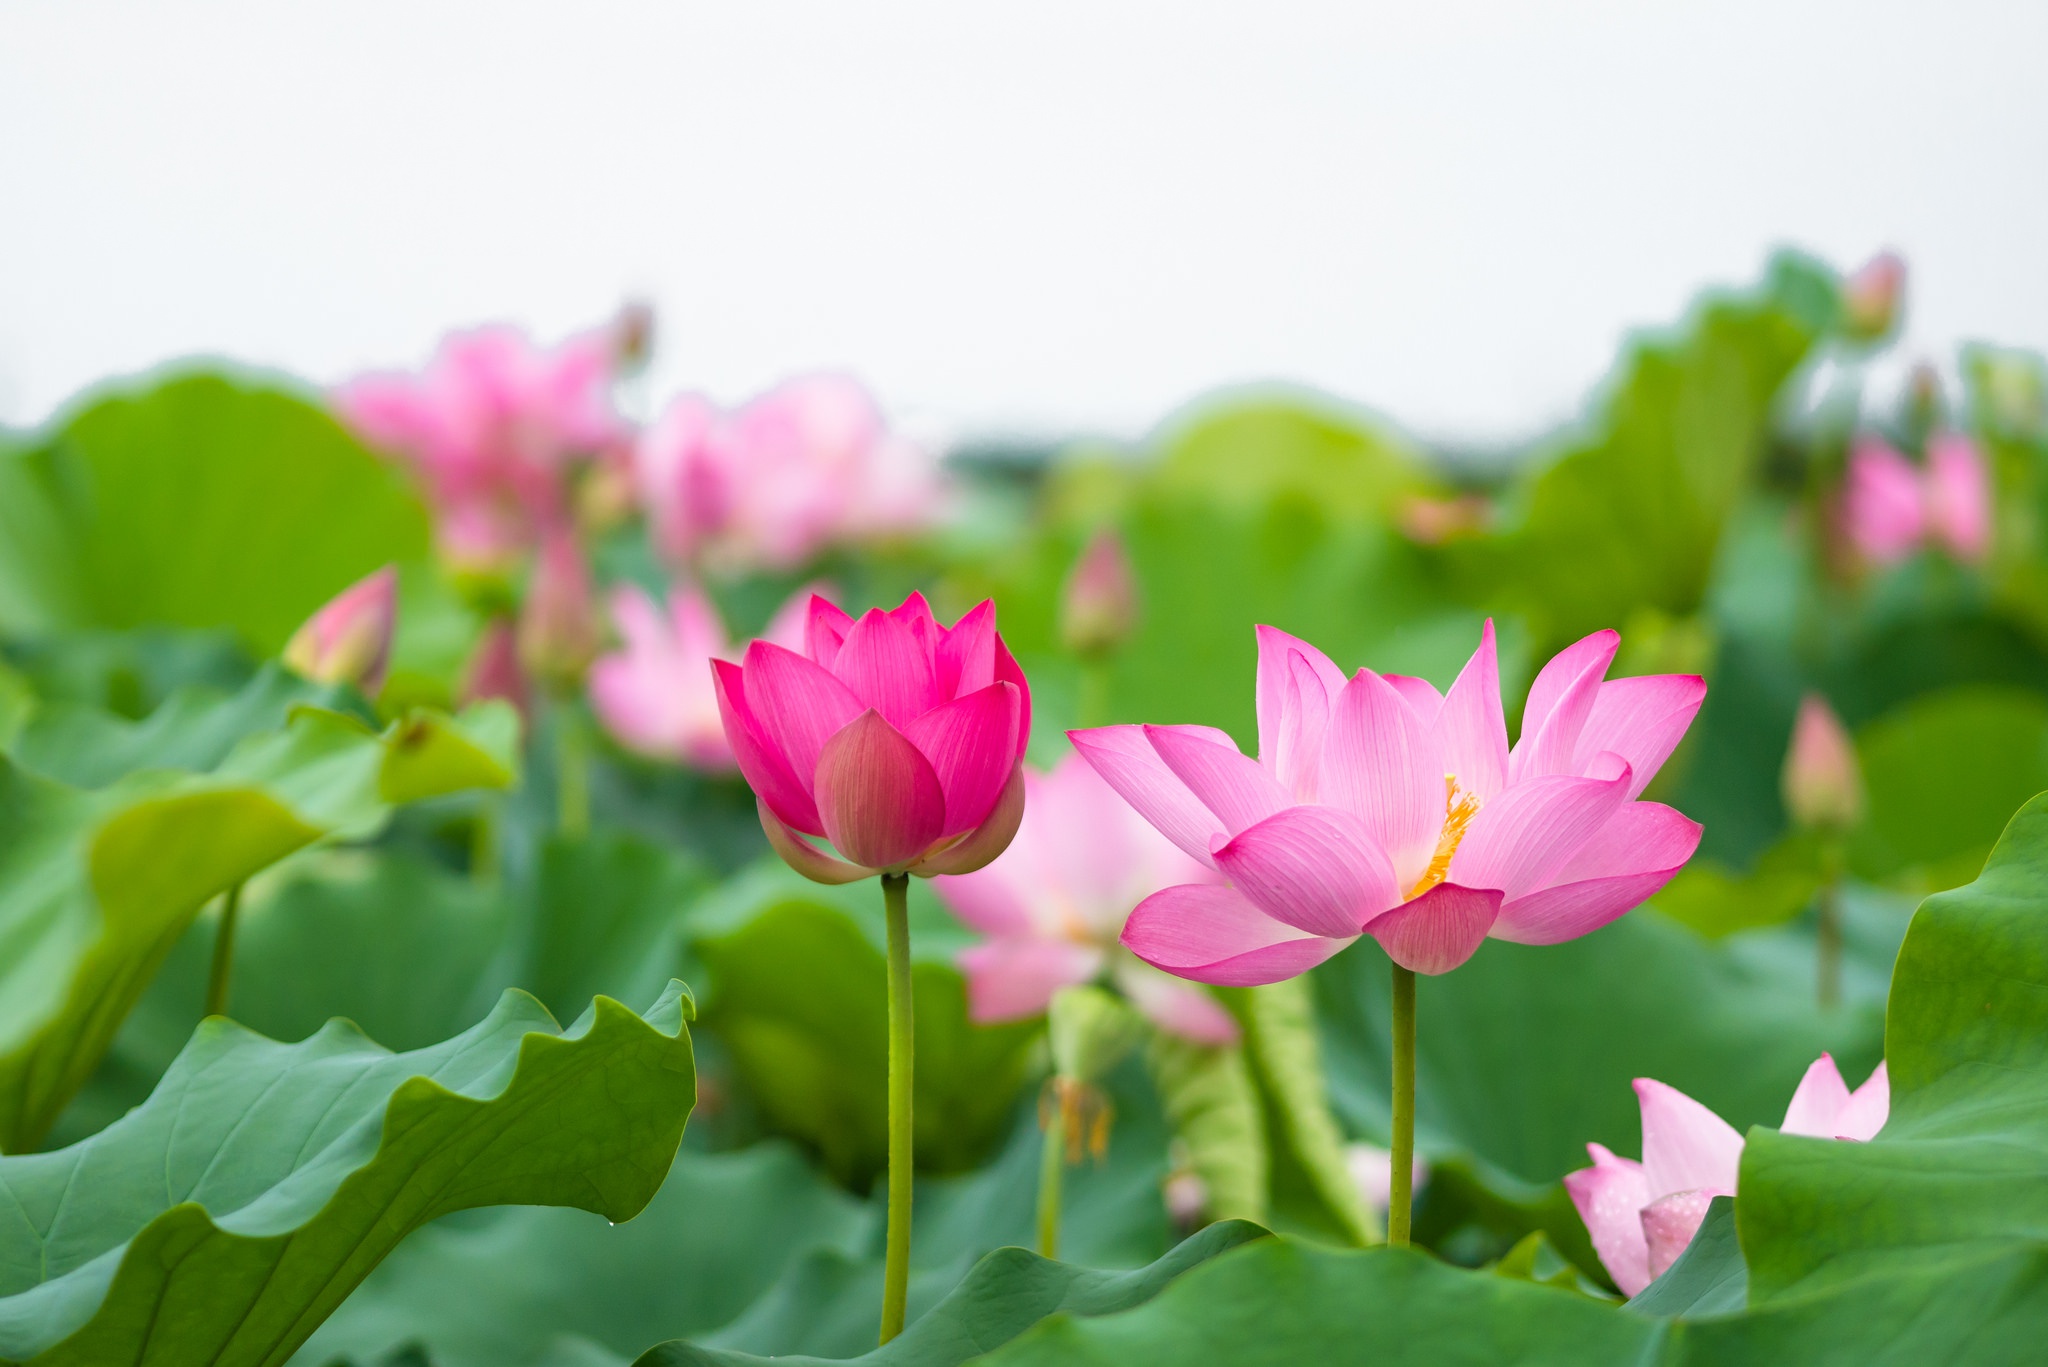 Hoa sen được xem là một biểu tượng của tình yêu và sự tinh khiết trong văn hóa Việt Nam. Hãy thưởng thức bức ảnh hoa sen này để thấy được vẻ đẹp của mùa hè và cảm nhận được sự thanh tịnh trong tâm hồn.